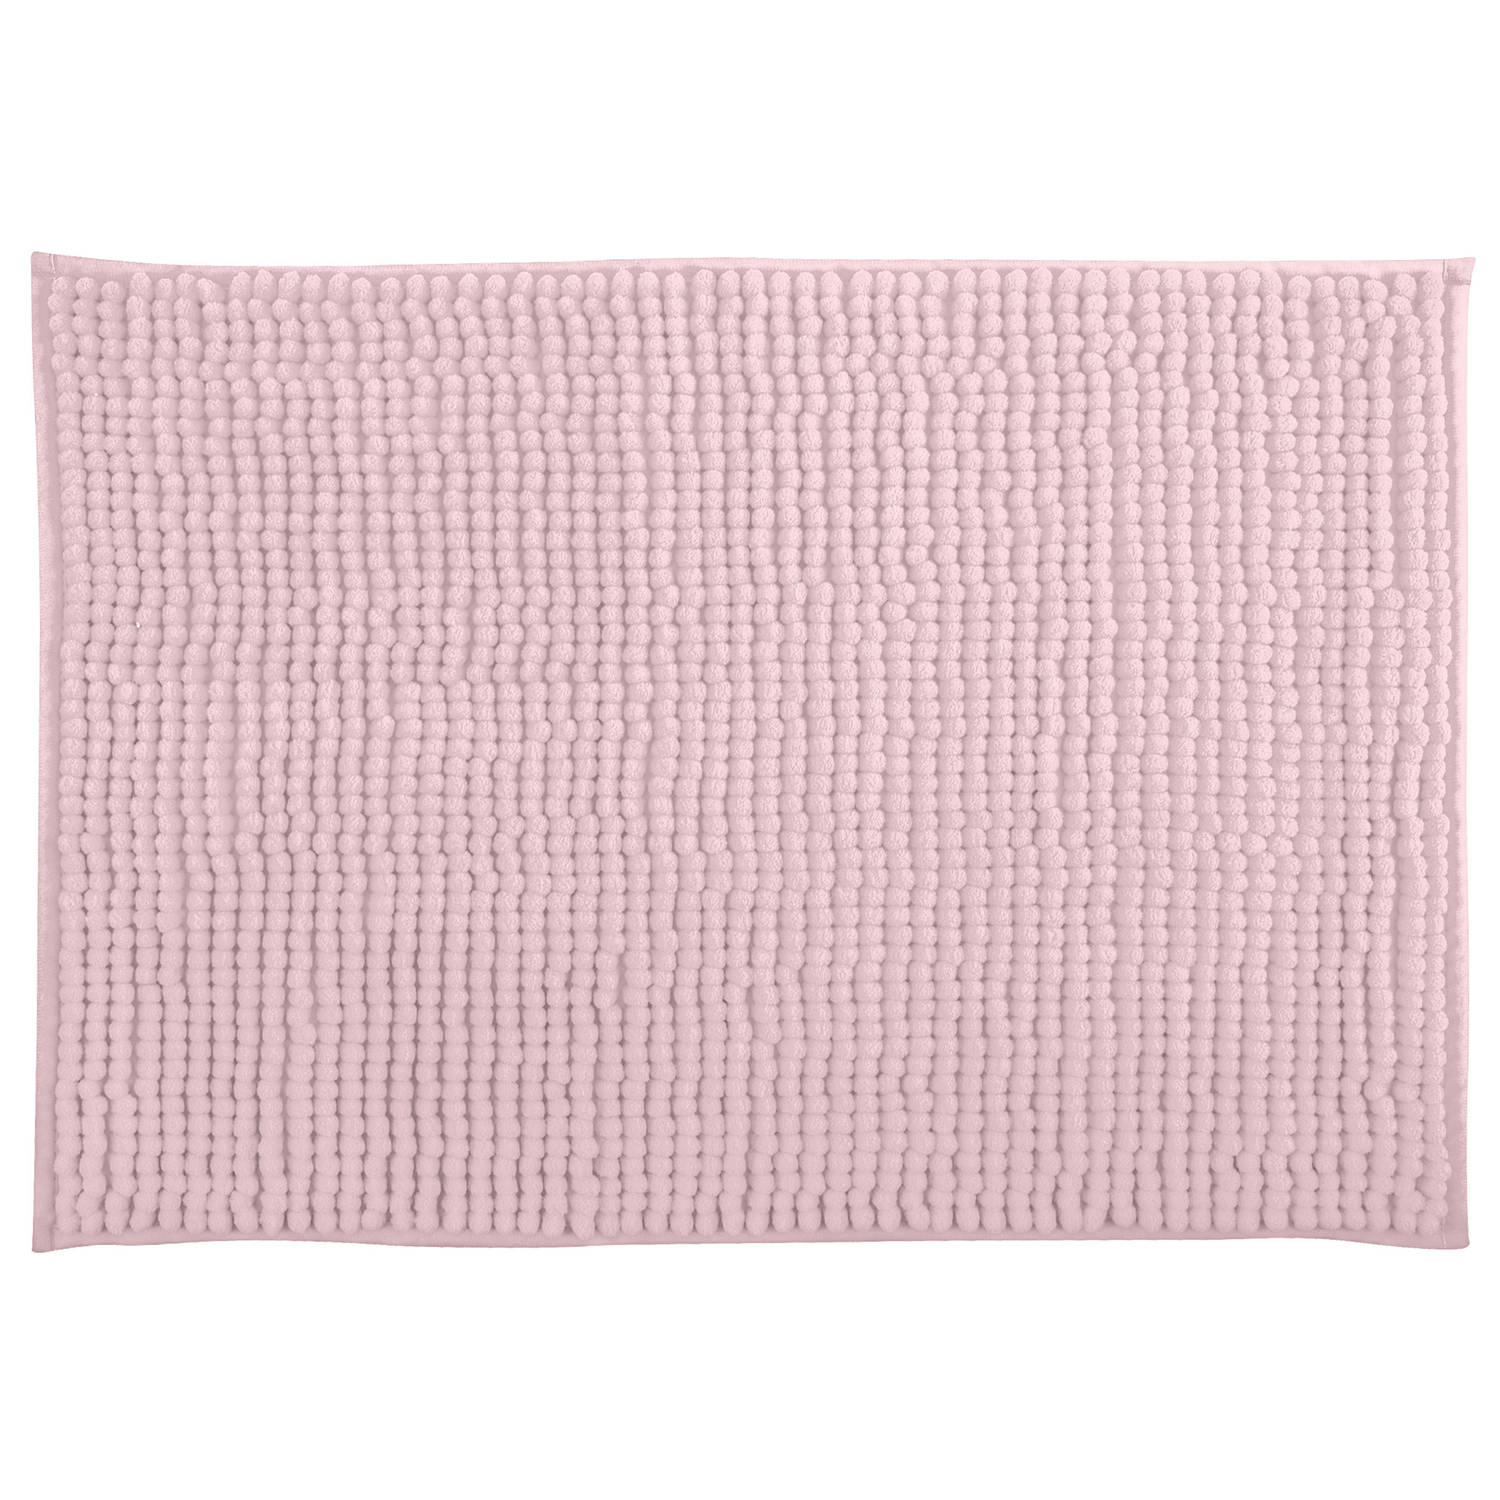 MSV Badkamerkleed/badmat tapijtje voor op de vloer - lichtroze - 40 x 60 cm - Microvezel - anti slip